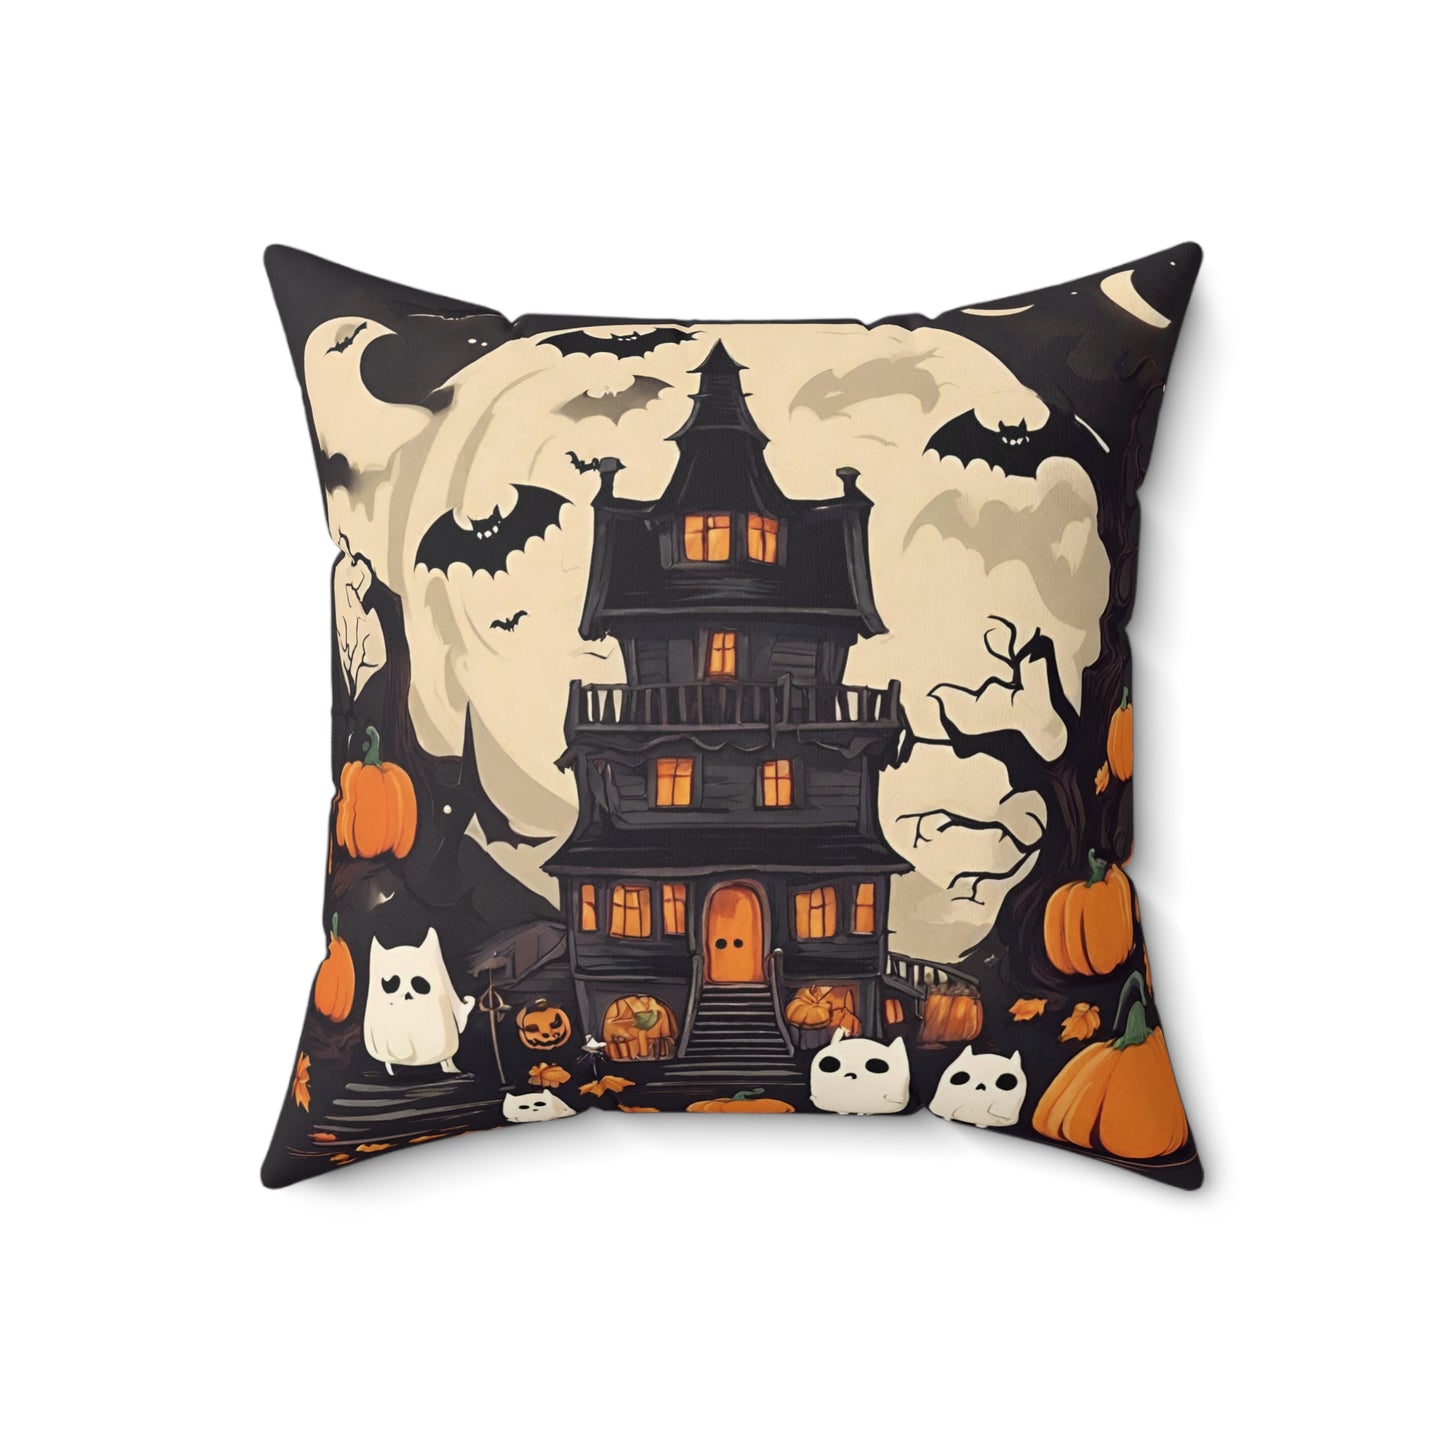 Throw Pillows | Halloween Home Décor 18" × 18" Home Decor Petrova Designs